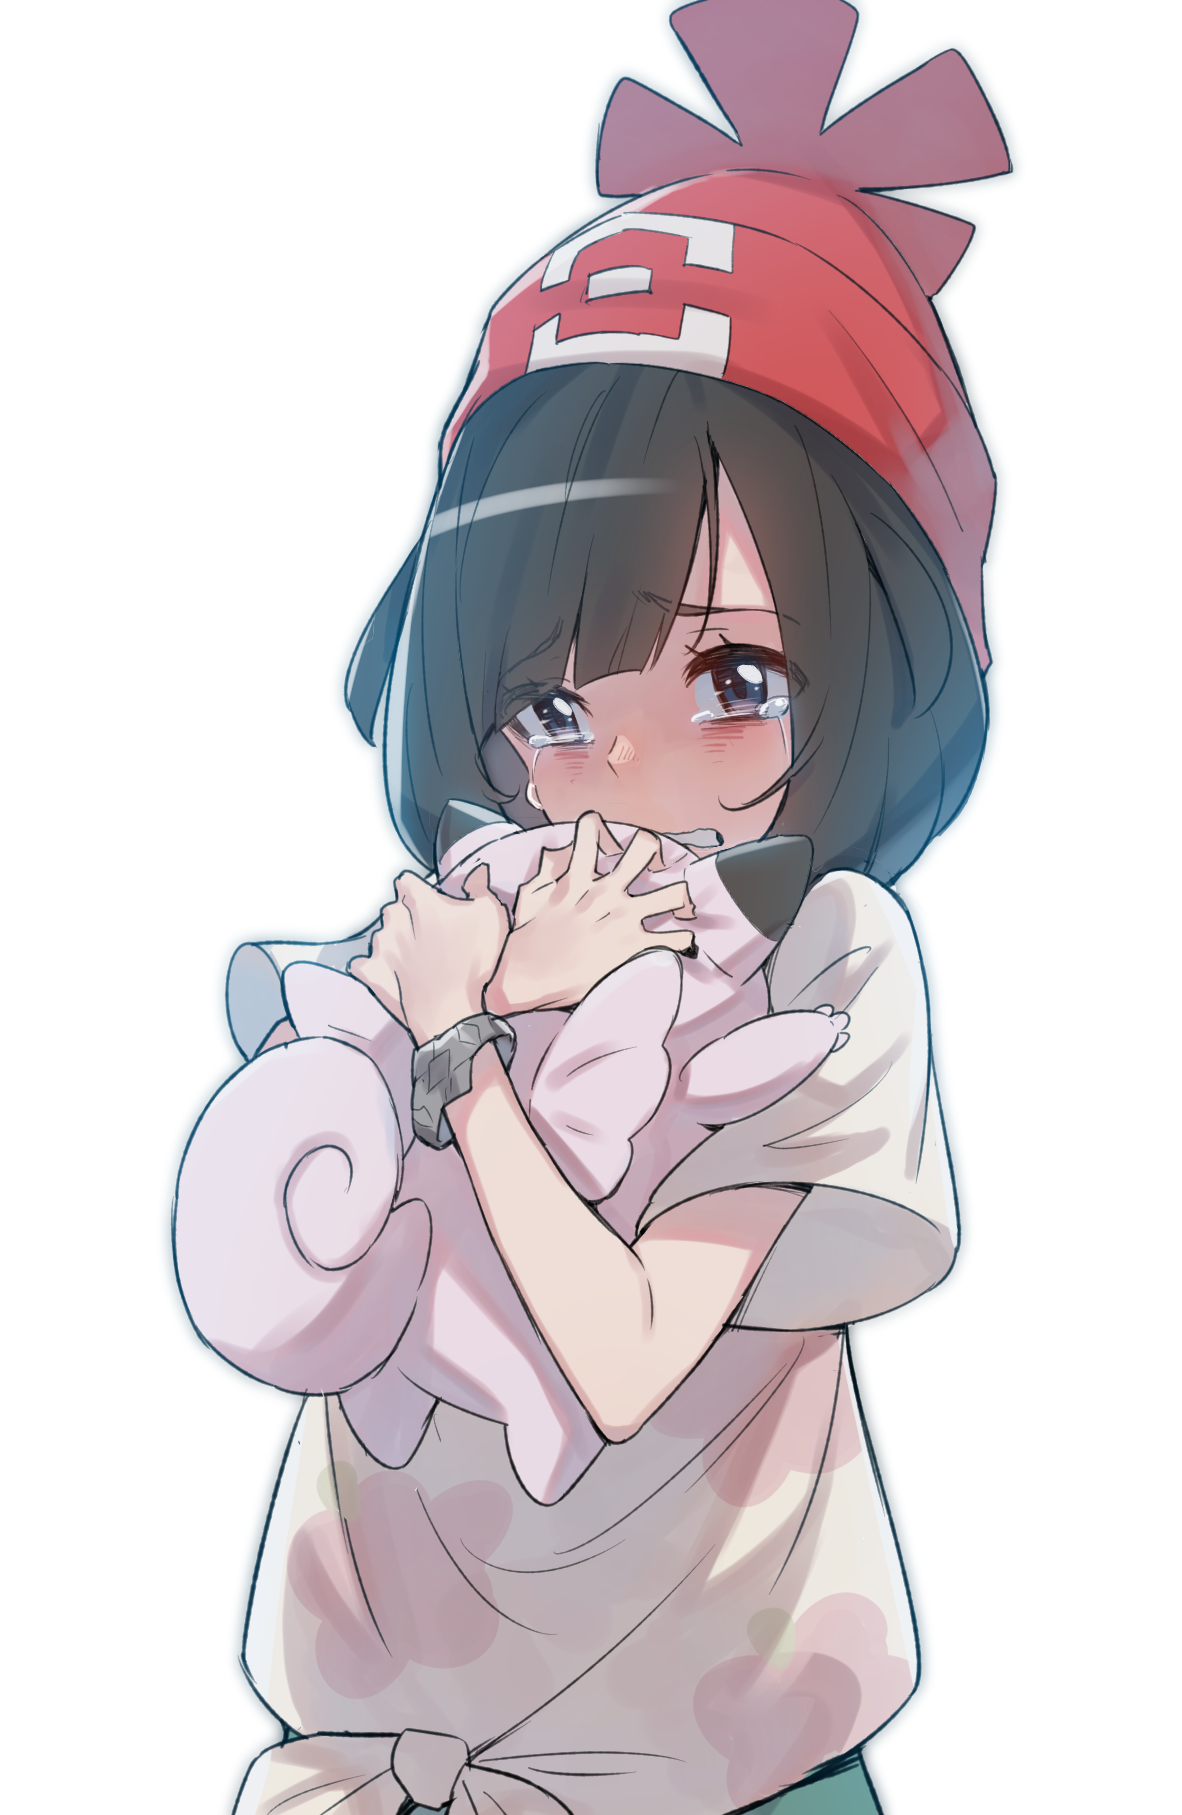 Anime 1182x1815 anime anime girls Pokémon hat simple background white background crying Supernew Selene (Pokémon) clefairy